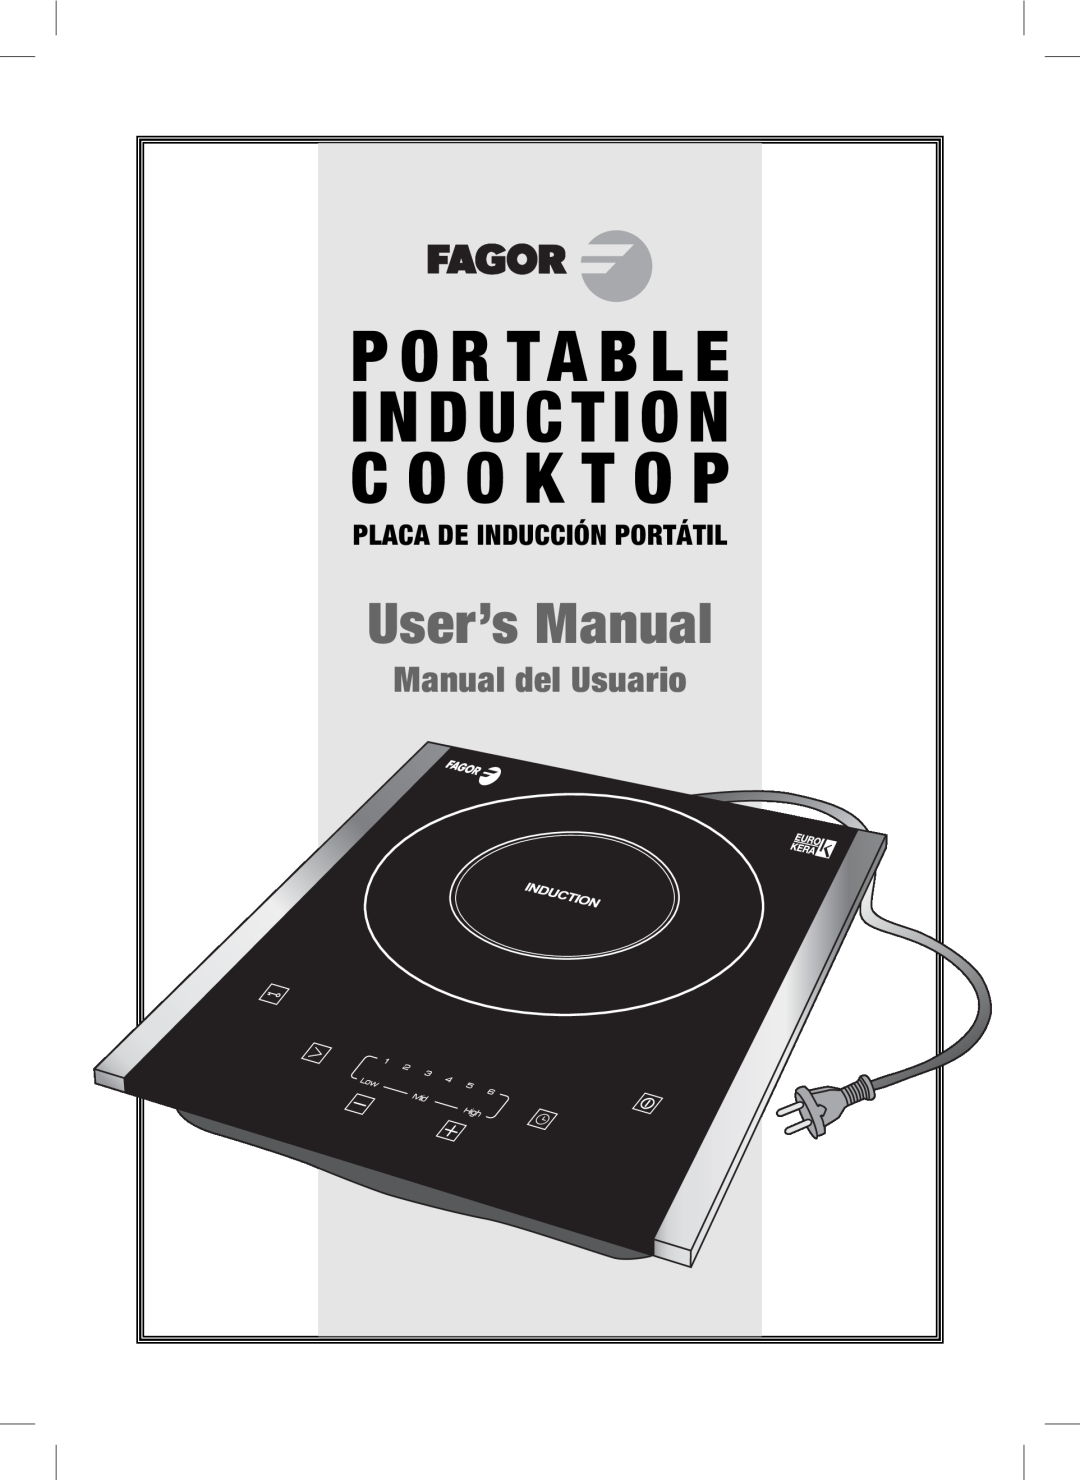 Fagor America Portable Induction Cooktop user manual Placa De Inducción Portátil, C O O K T O P, P O R Ta B L E 